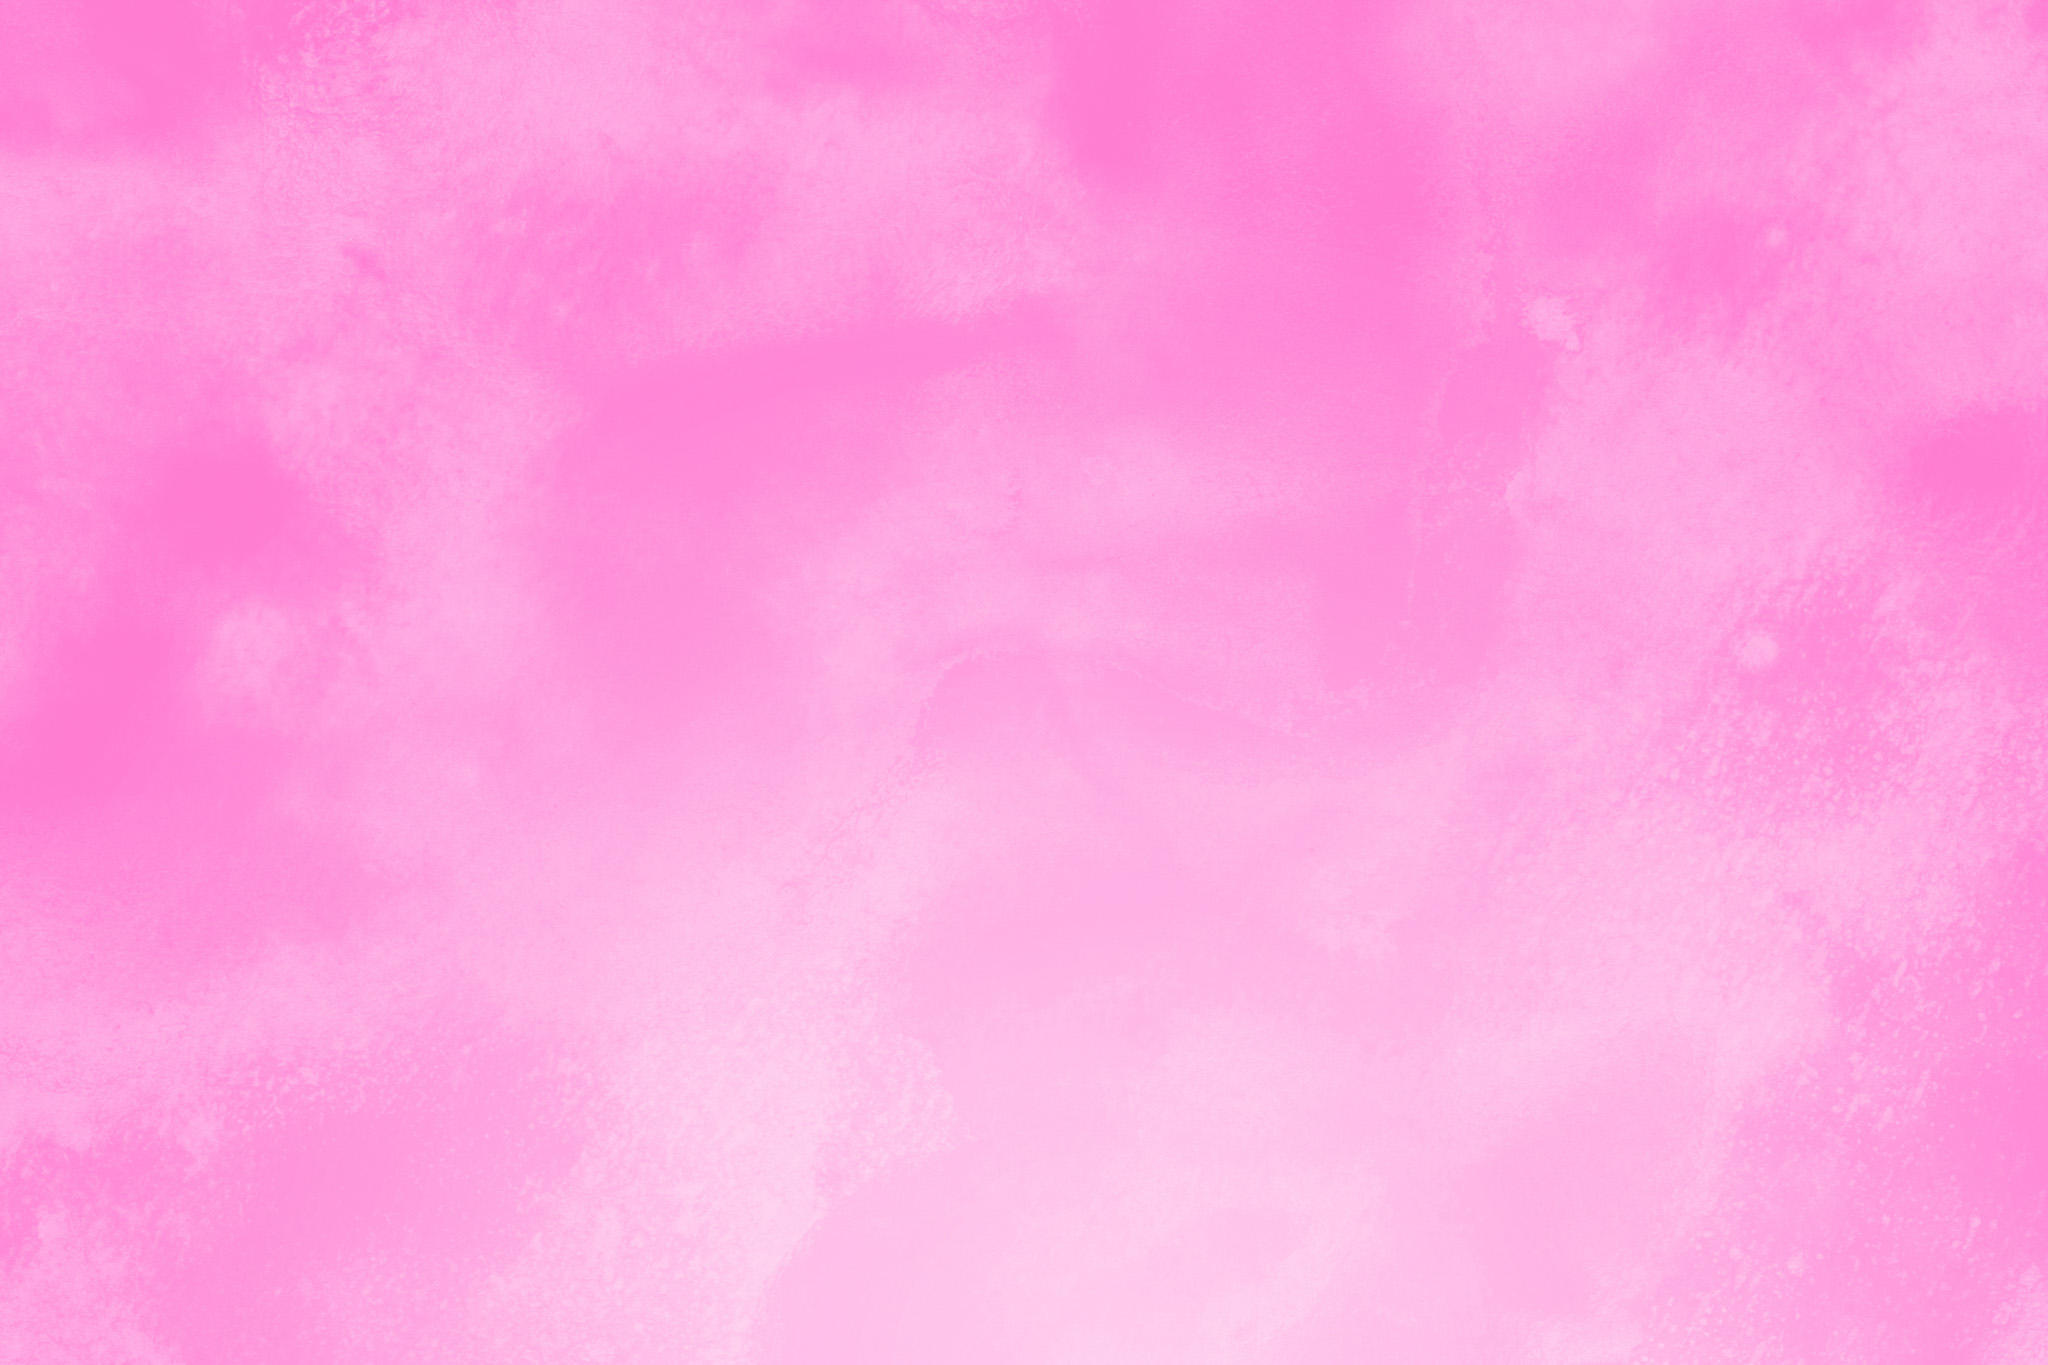 グラデーションがピンクのシンプル壁紙 の画像素材を無料ダウンロード 1 フリー素材 Beiz Images